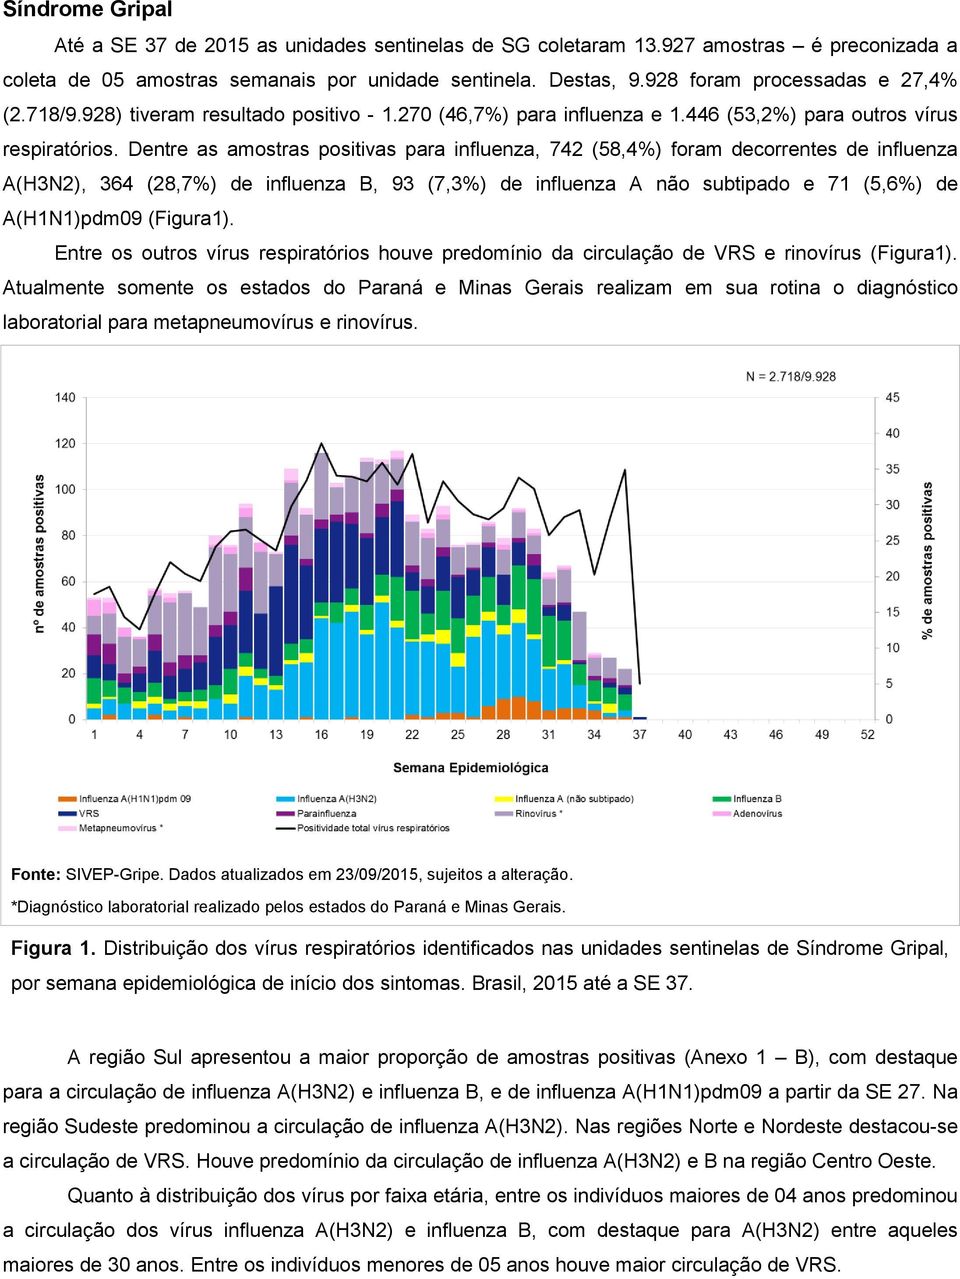 Dentre as amostras positivas para influenza, 742 (58,4%) foram decorrentes de influenza A(H3N2), 364 (28,7%) de influenza B, 93 (7,3%) de influenza A não subtipado e 71 (5,6%) de A(H1N1)pdm09